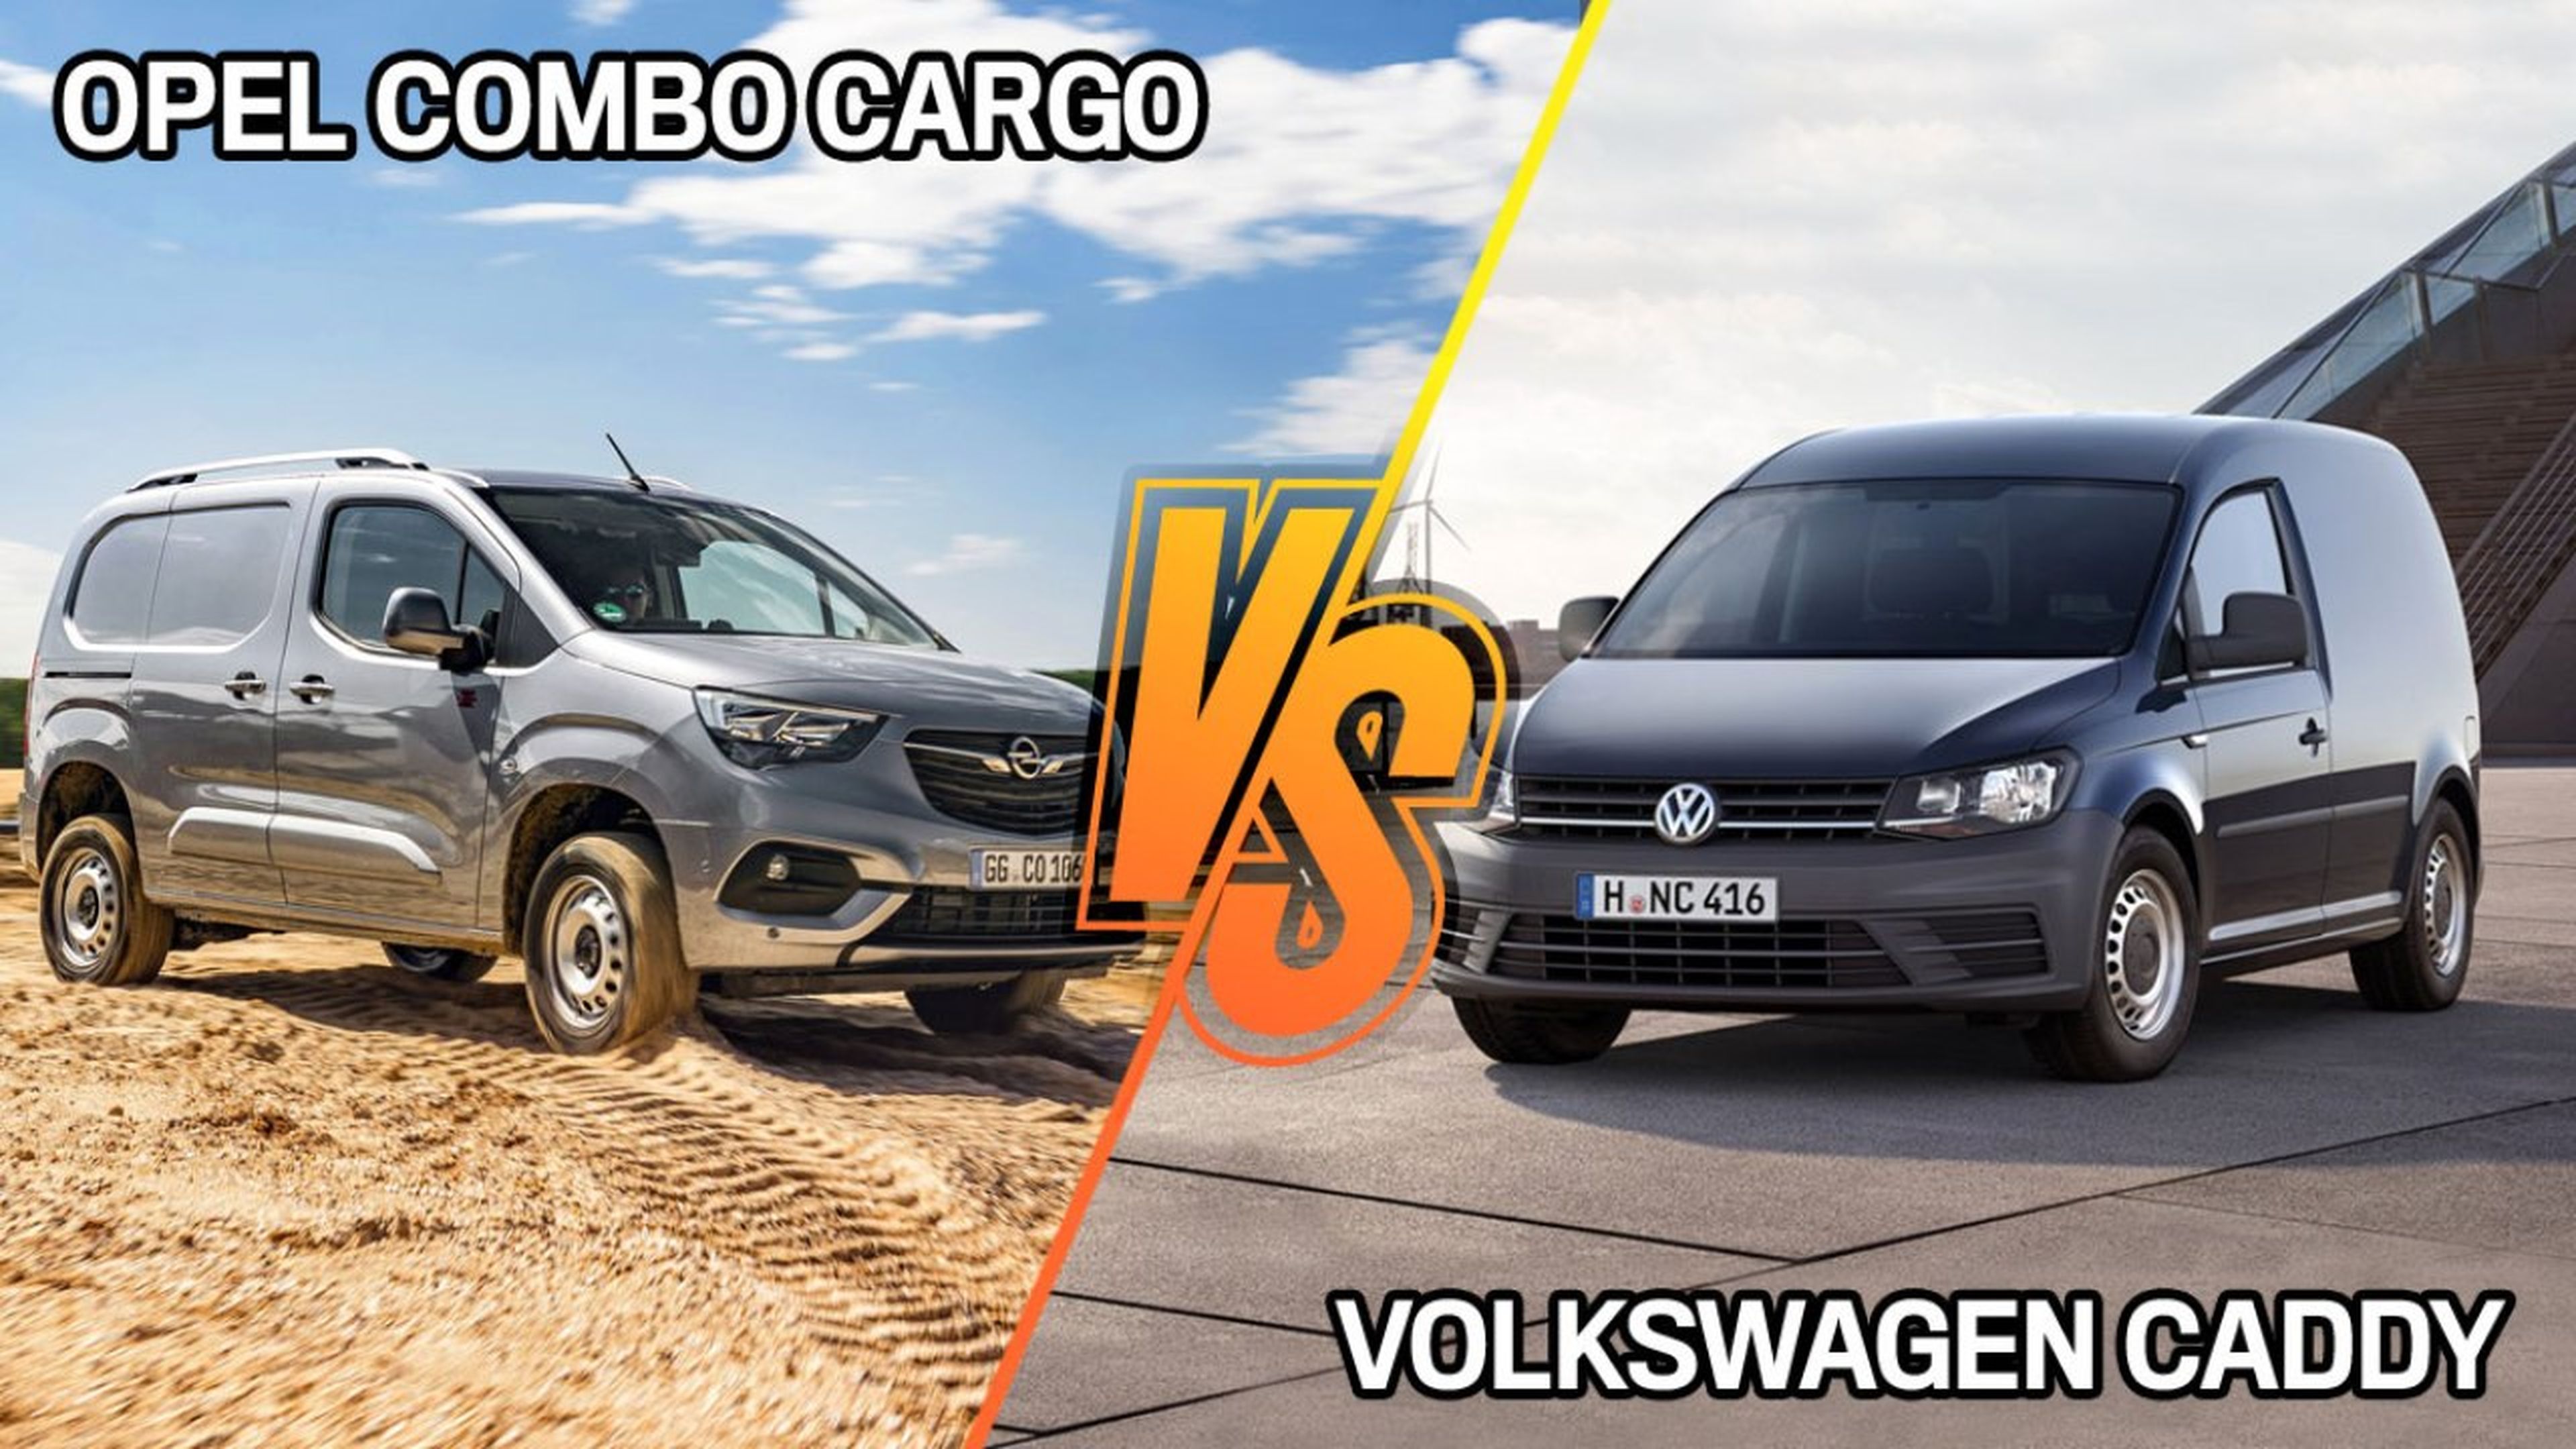 opel-combo-cargo-vs-volkswagen-caddy-furgon